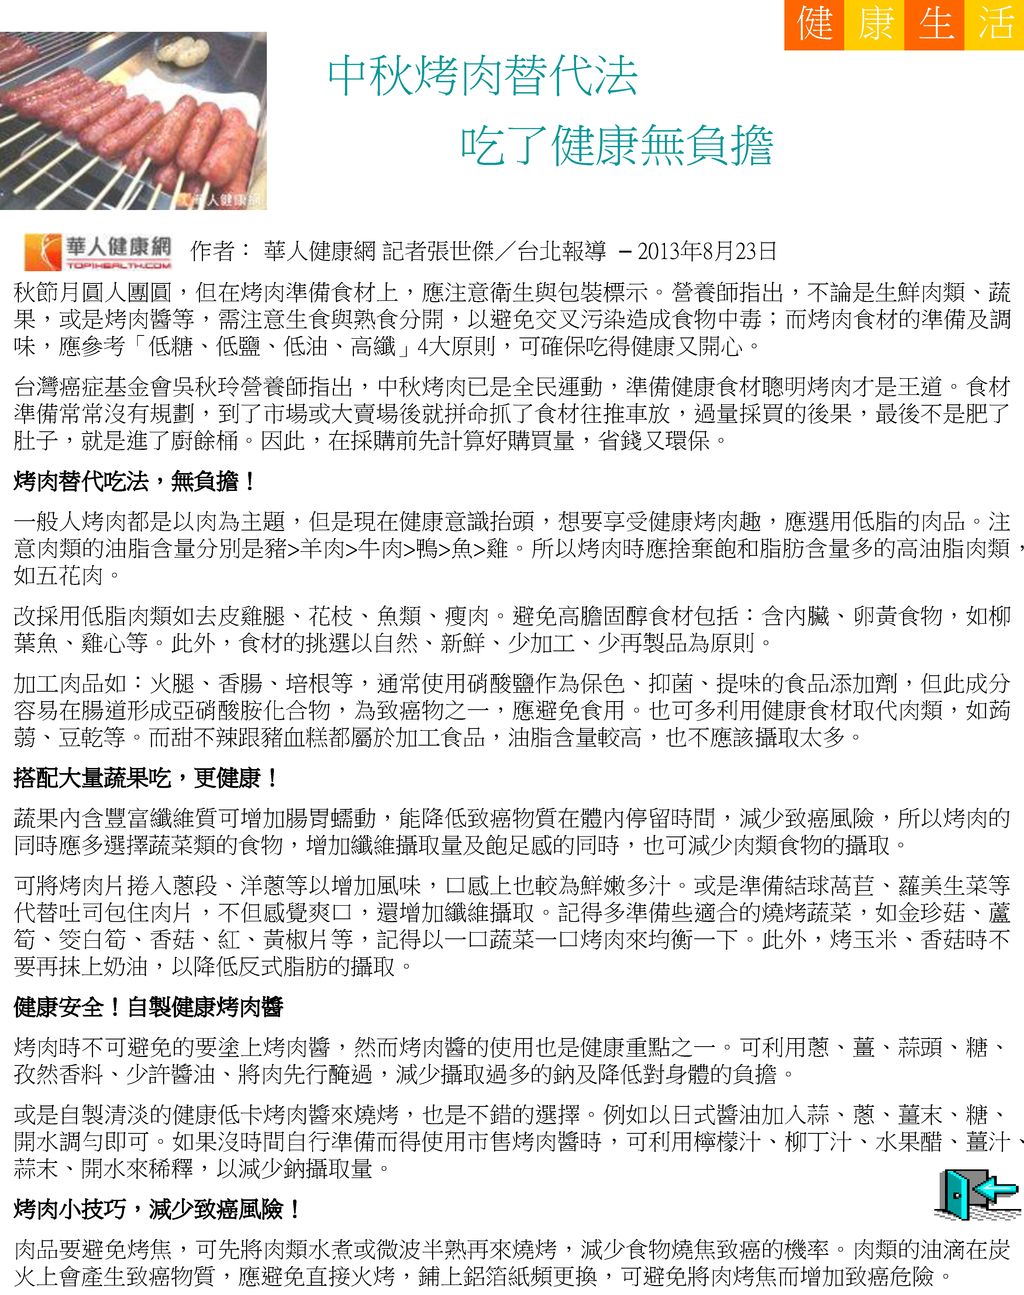 中秋烤肉替代法 吃了健康無負擔 健 康 活 生 作者： 華人健康網 記者張世傑／台北報導 – 2013年8月23日